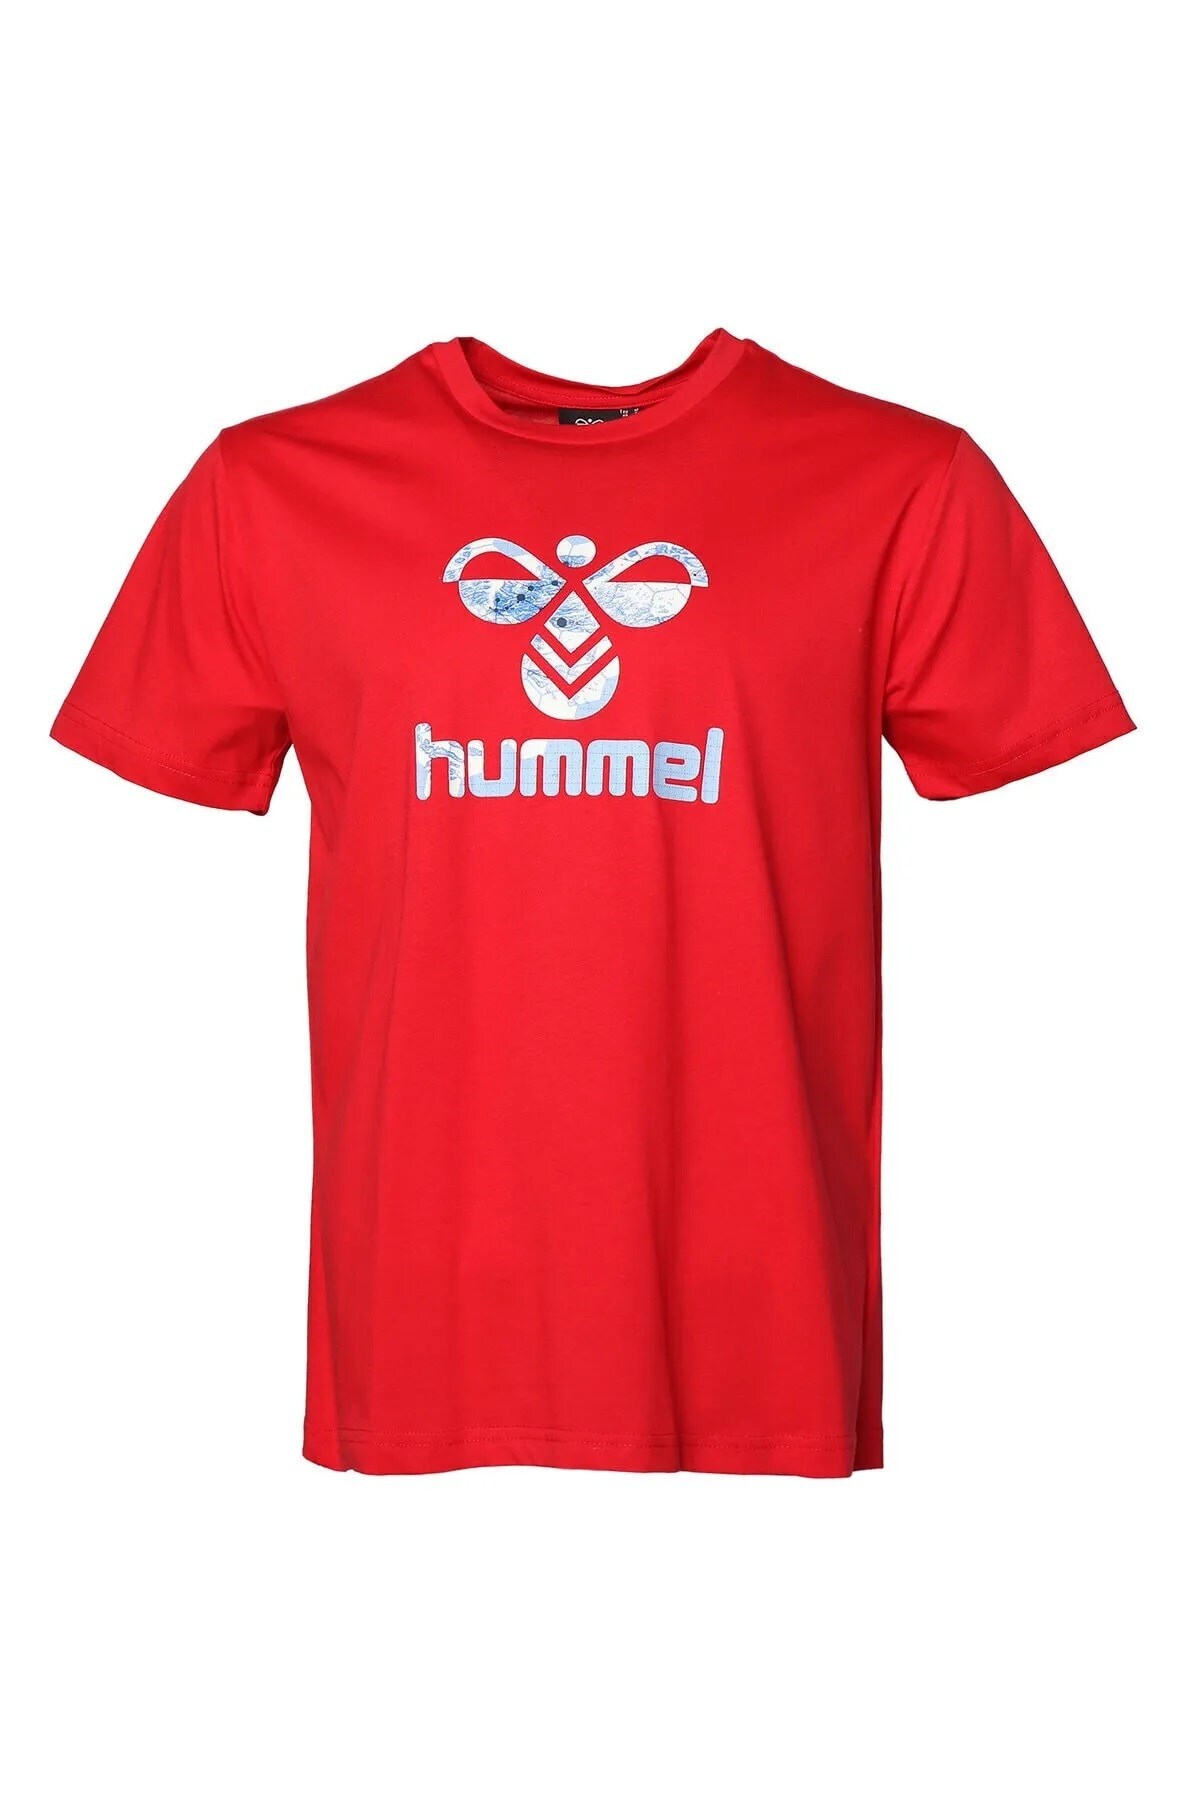 HUMMEL تی شرت مردانه dante